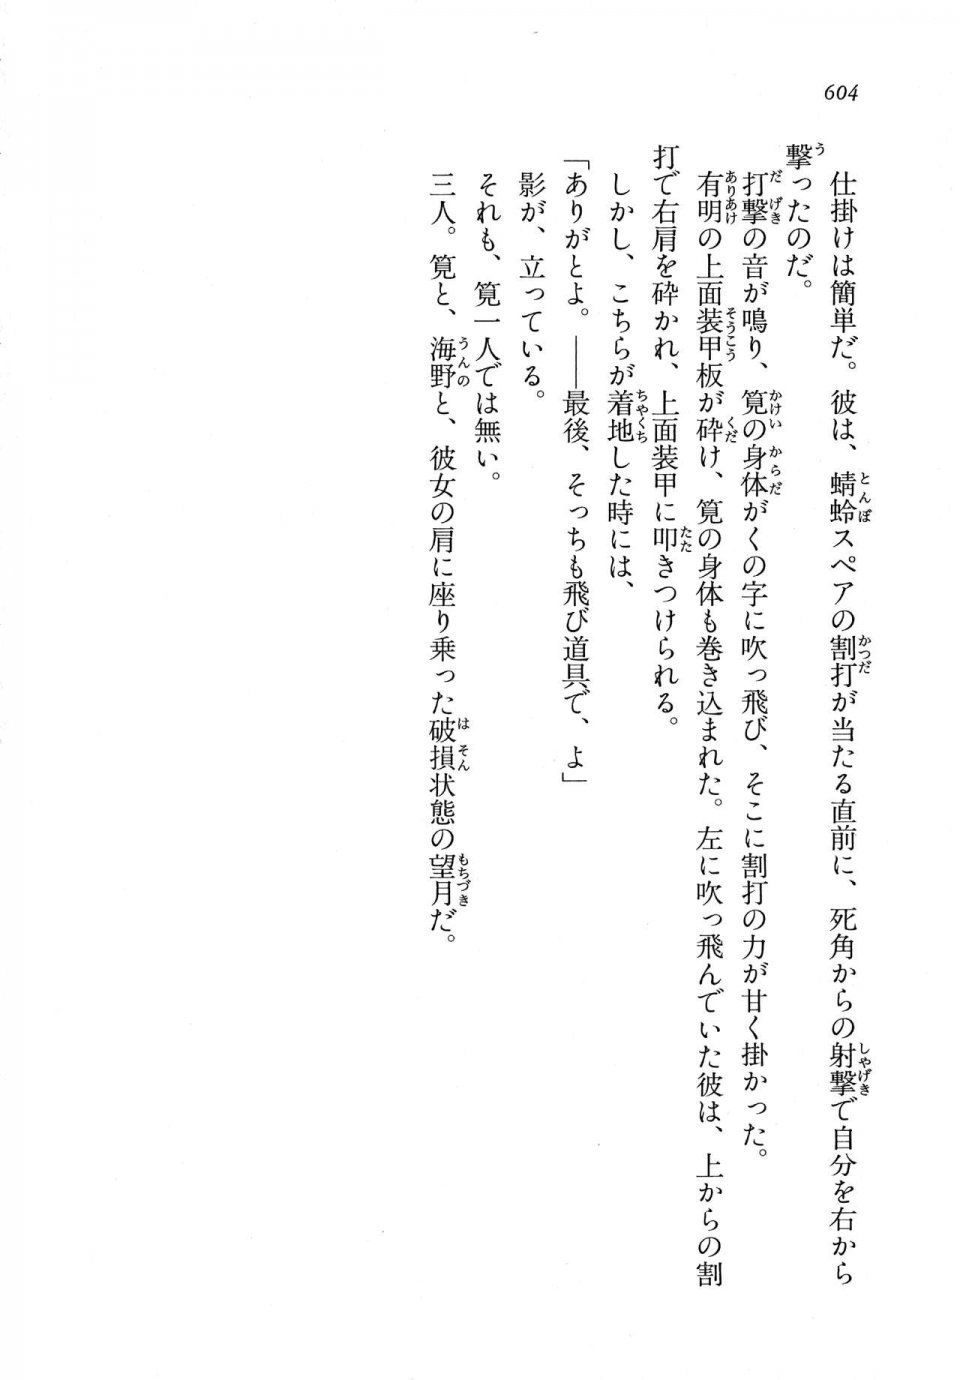 Kyoukai Senjou no Horizon LN Vol 11(5A) - Photo #604